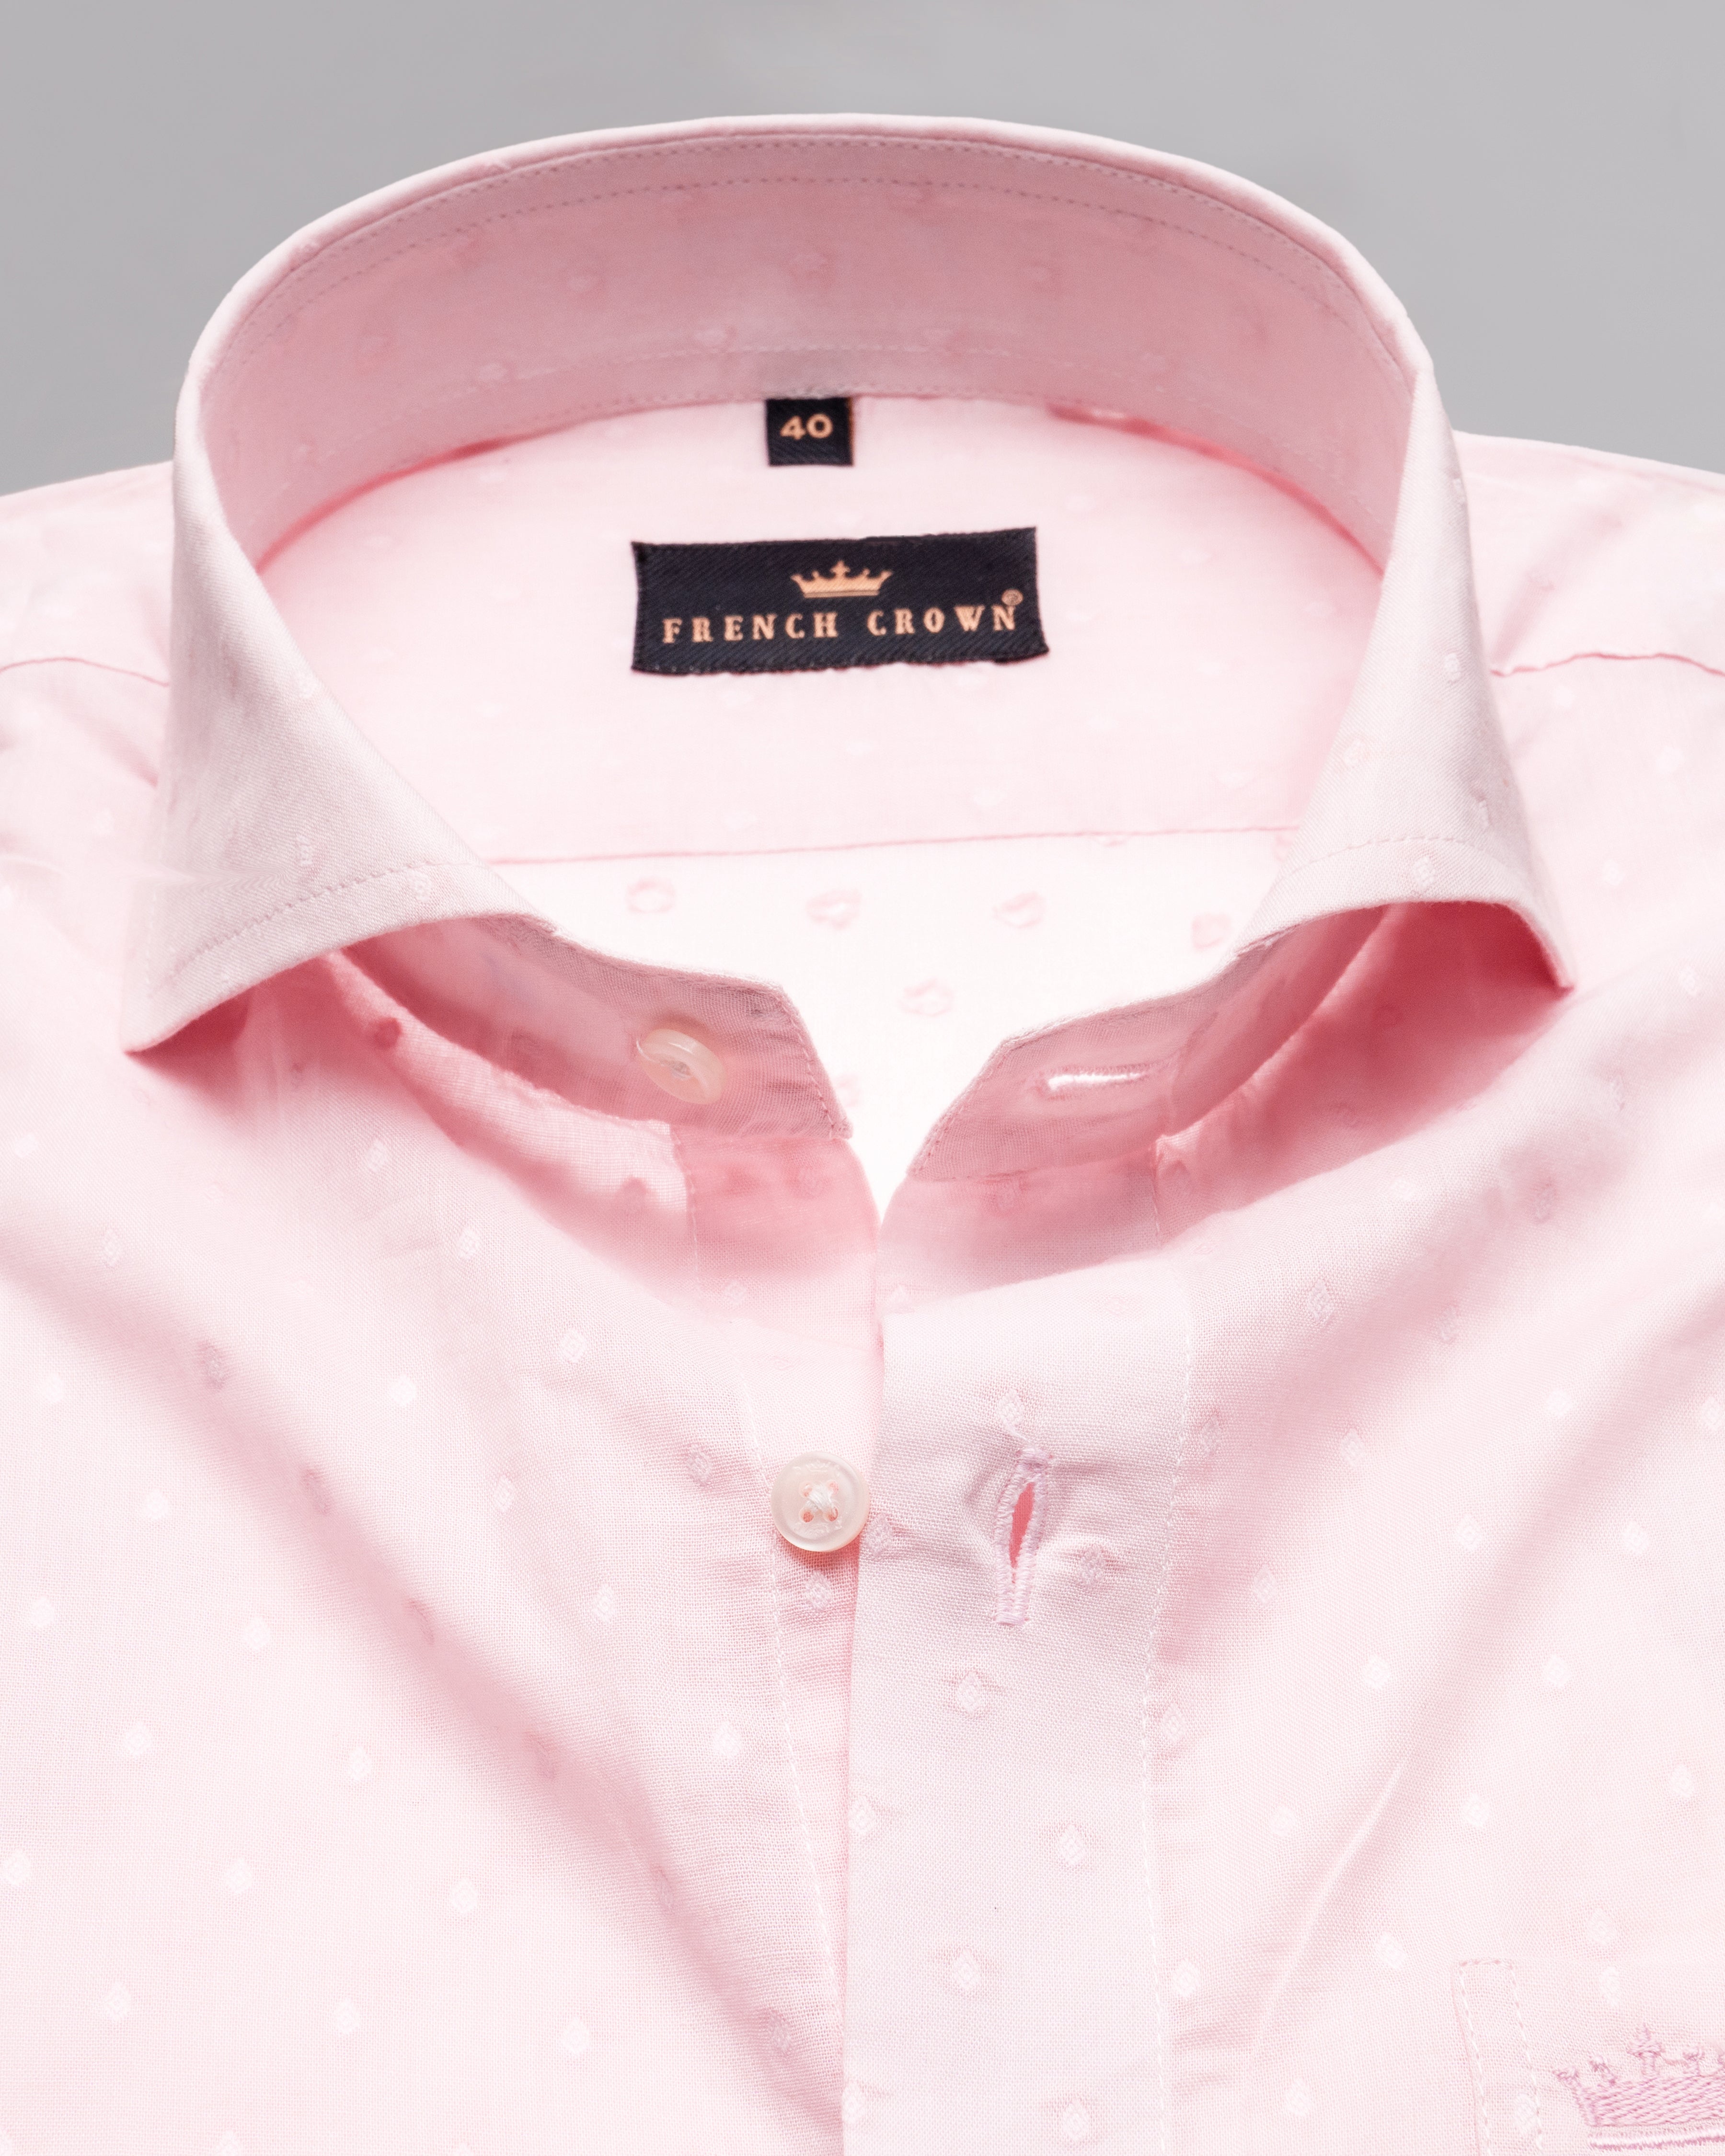 Pale Rose Pink Dobby Textured Ultra Lightweight Premium Giza Cotton Shirt 4959-CA-38, 4959-CA-H-38, 4959-CA-39, 4959-CA-H-39, 4959-CA-40, 4959-CA-42, 4959-CA-H-42, 4959-CA-44, 4959-CA-H-44, 4959-CA-46, 4959-CA-H-46, 4959-CA-48, 4959-CA-H-48, 4959-CA-50, 4959-CA-H-50, 4959-CA-52, 4959-CA-H-52, 4959-CA-H-40